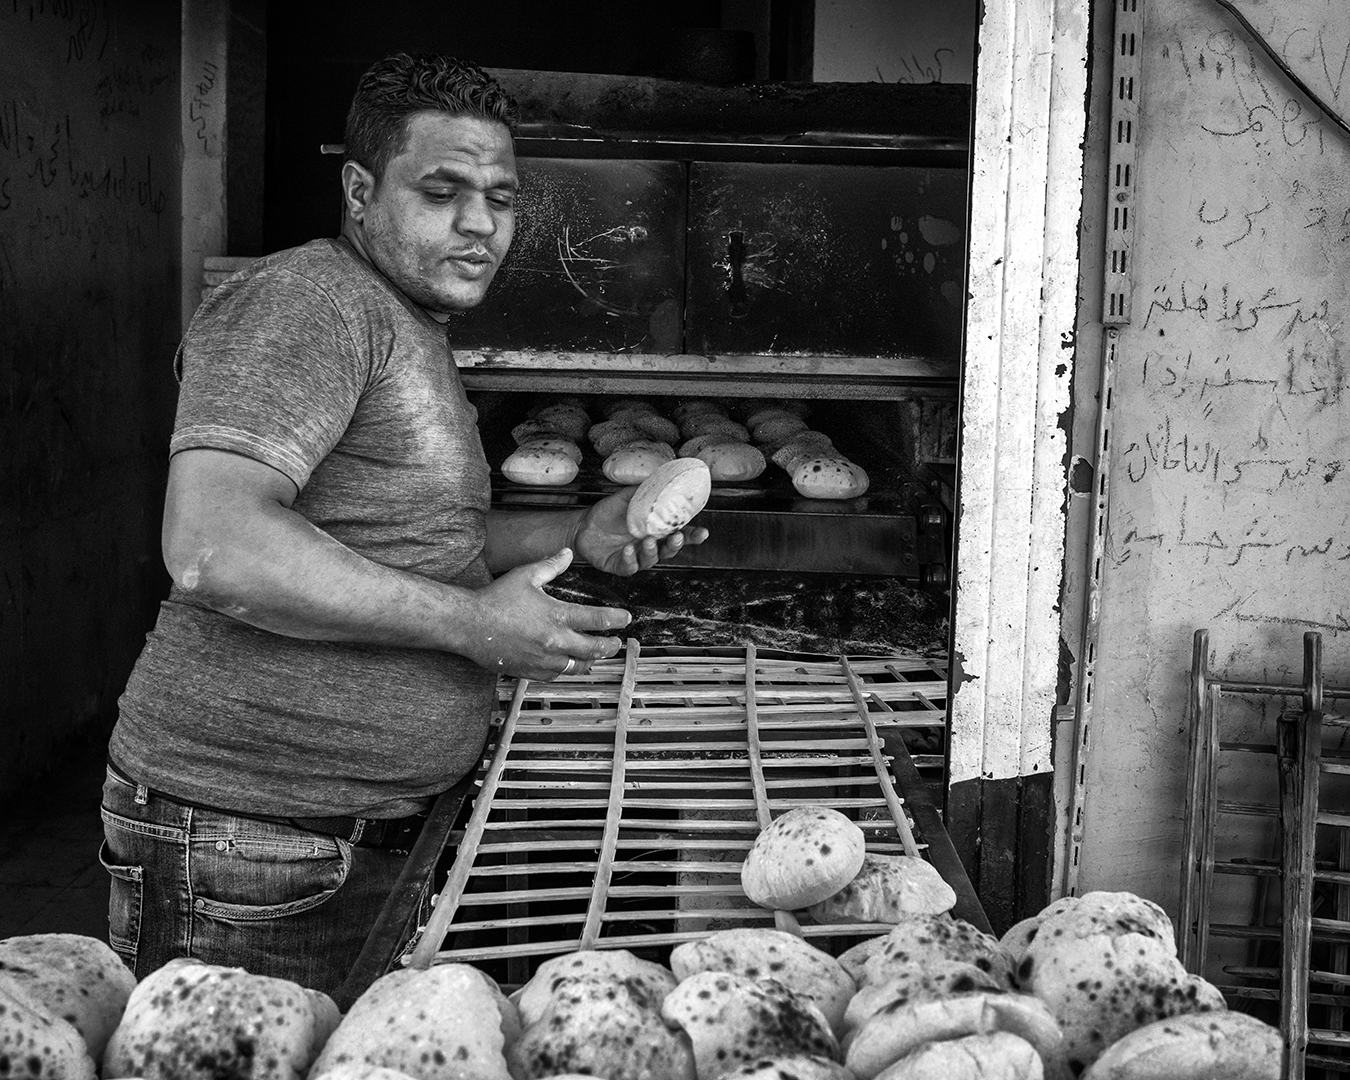 Bäcker in Ägypten